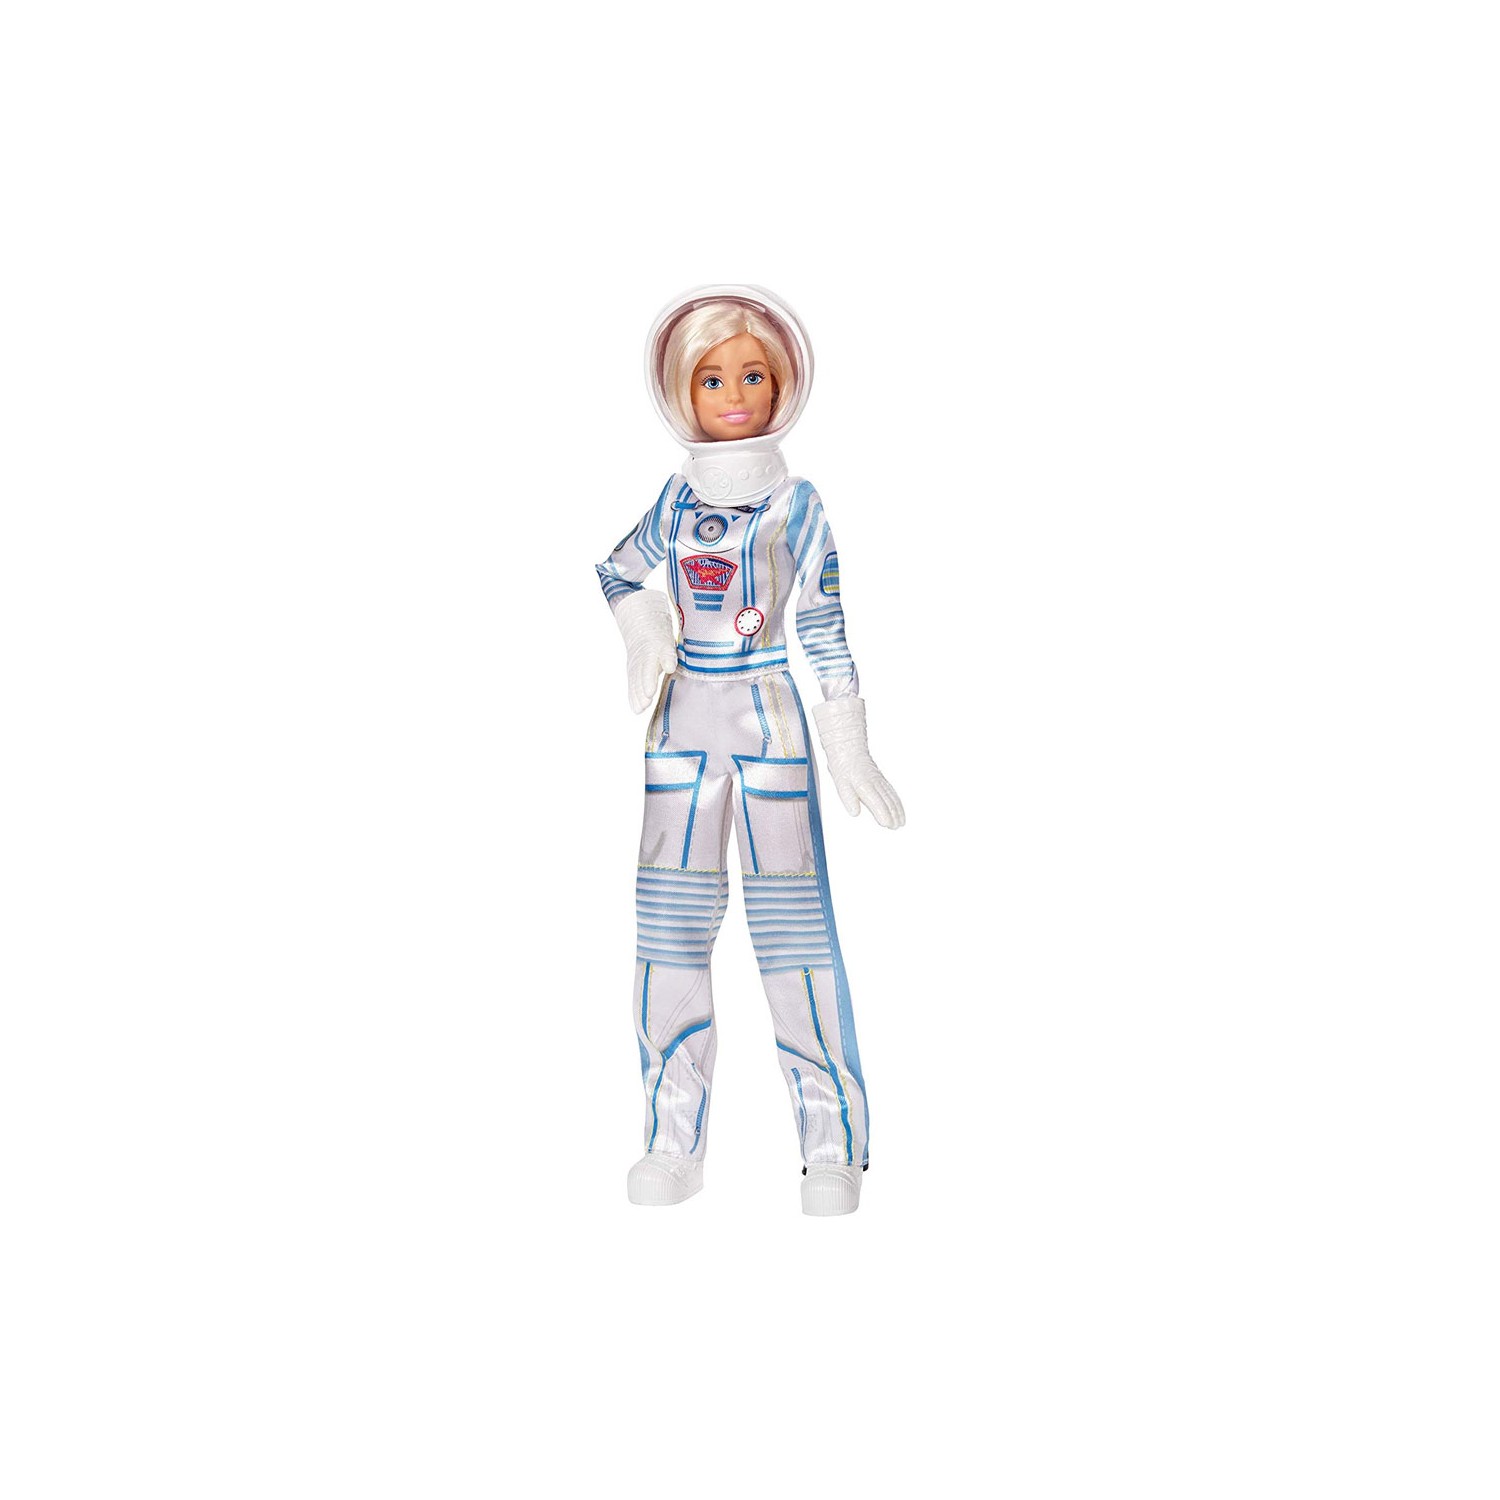 Кукла Barbie You Can Be Anything - космонавт кукла barbie ken 60th anniversary барби кен 60 летний юбилей